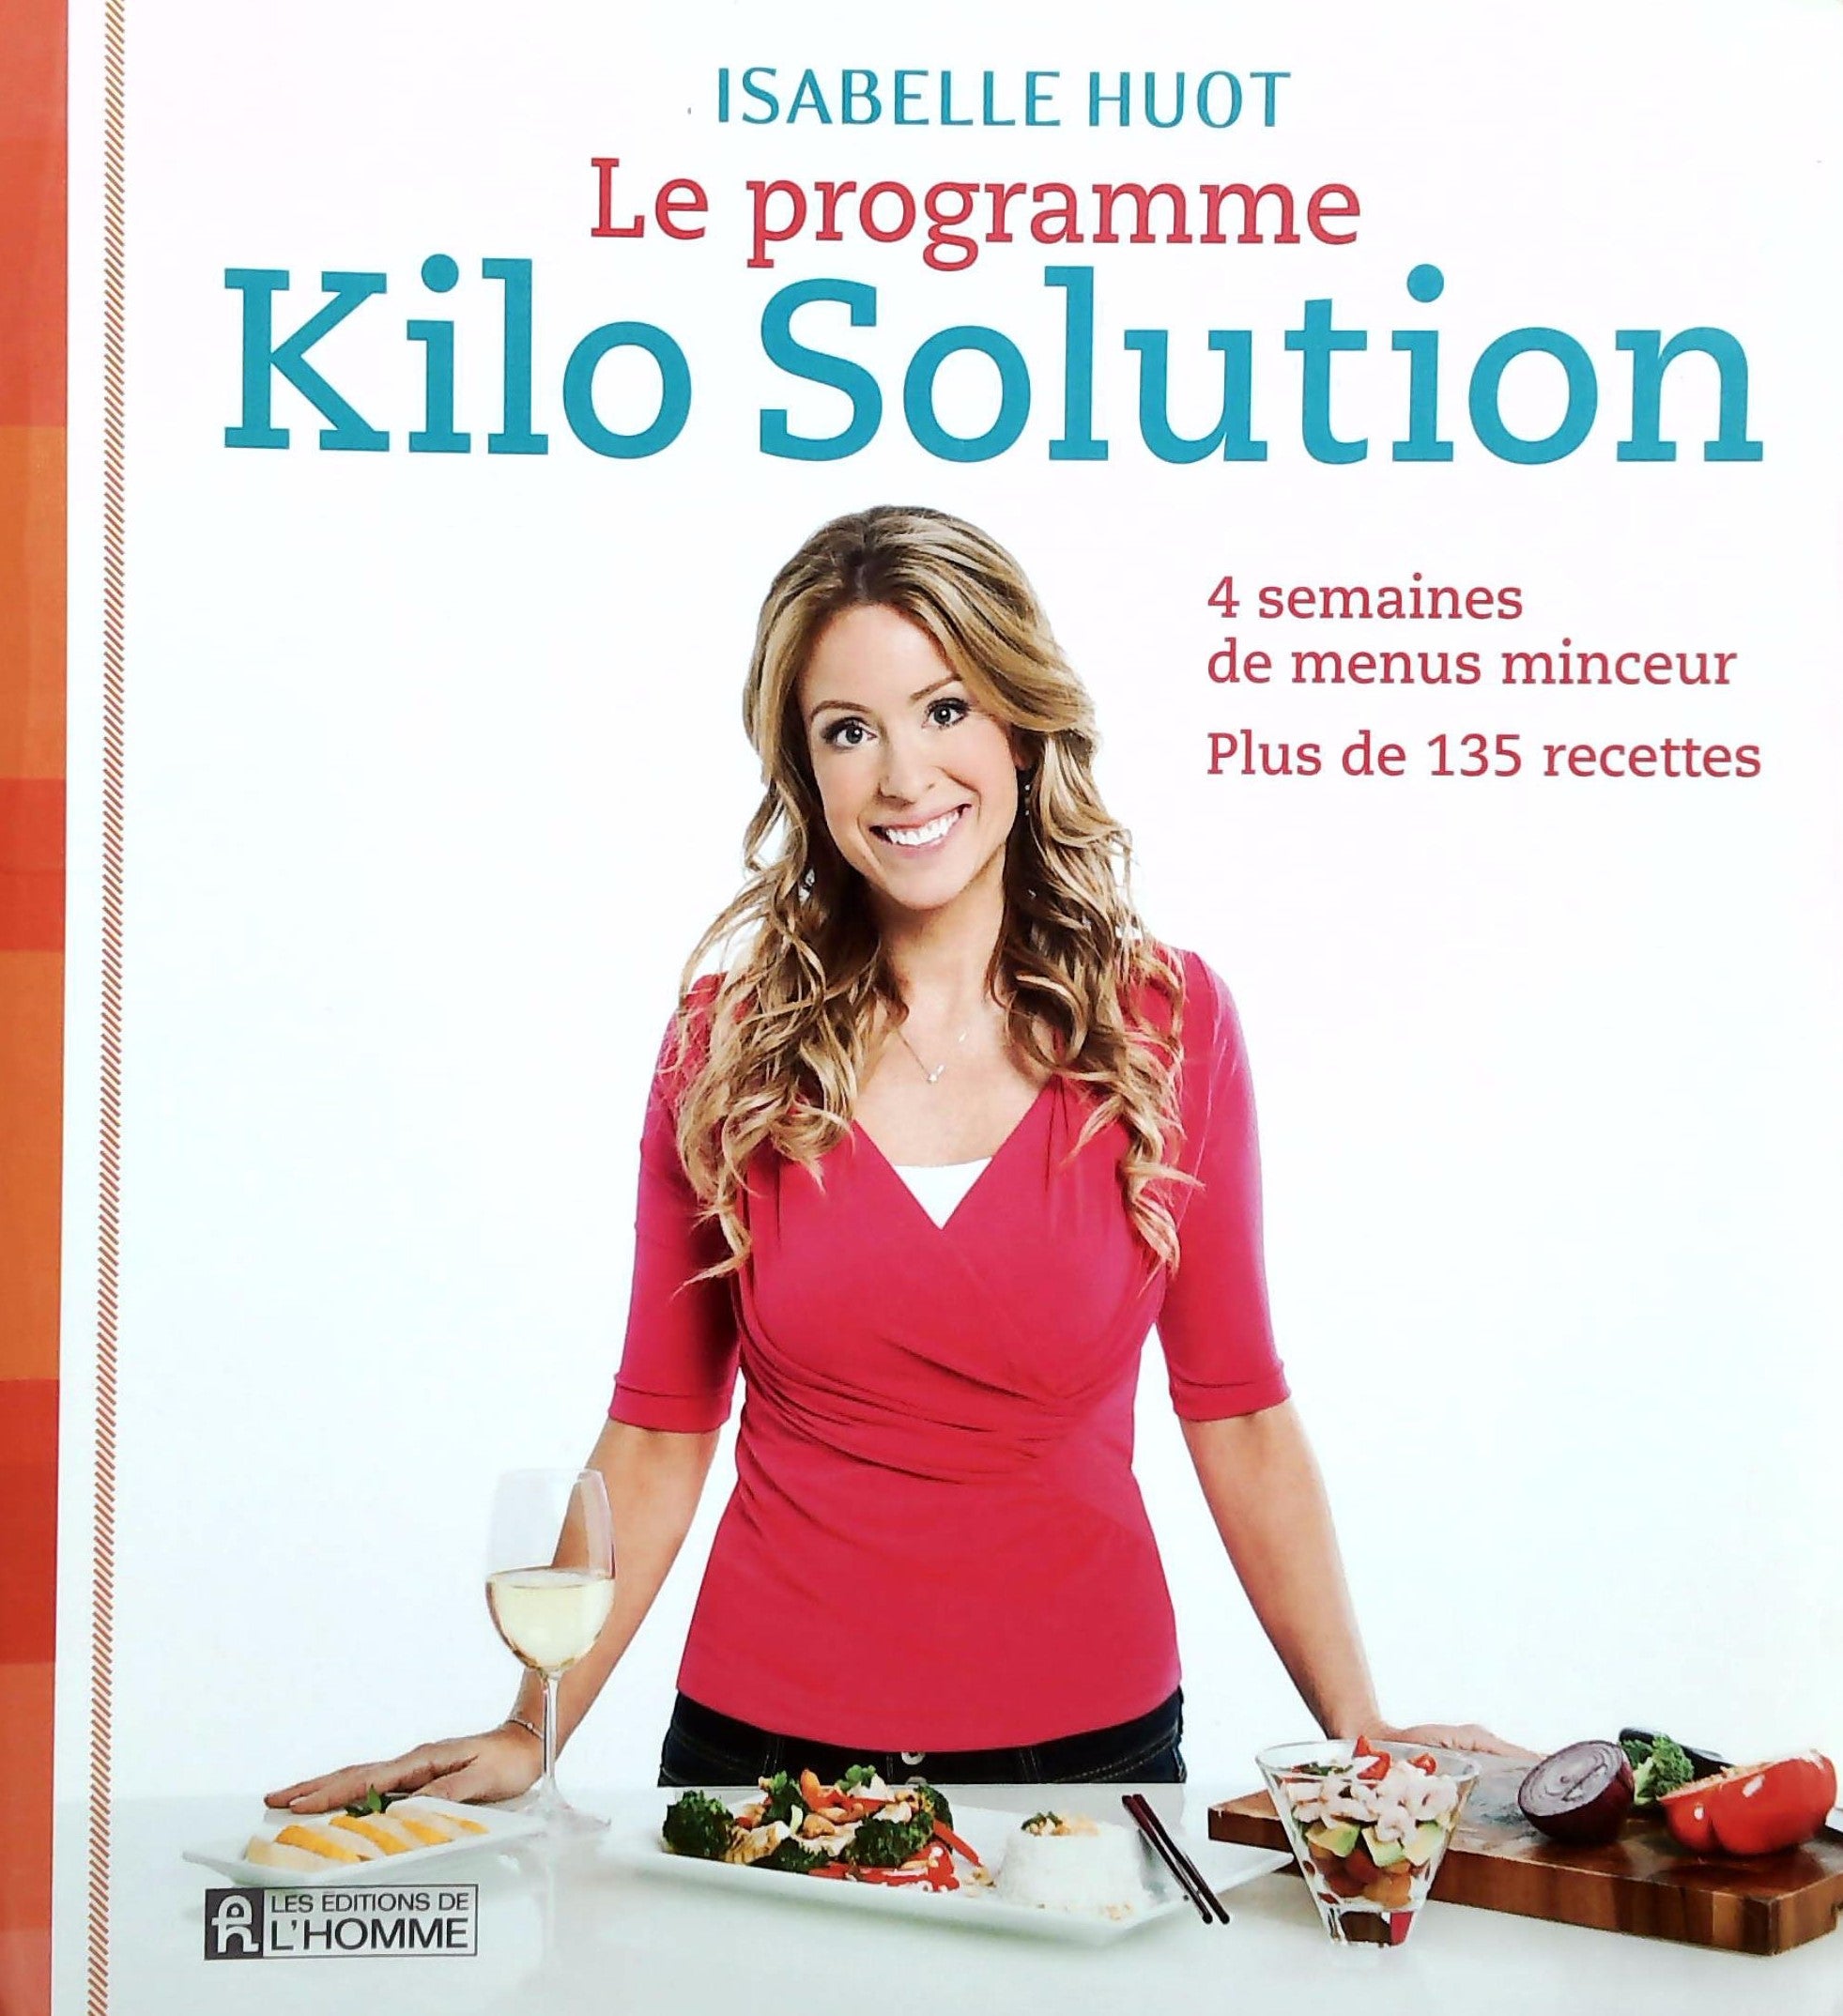 Livre ISBN 2761933788 Le programme Kilo Solution : 4 semaines de menus minceur (Isabelle Huot)